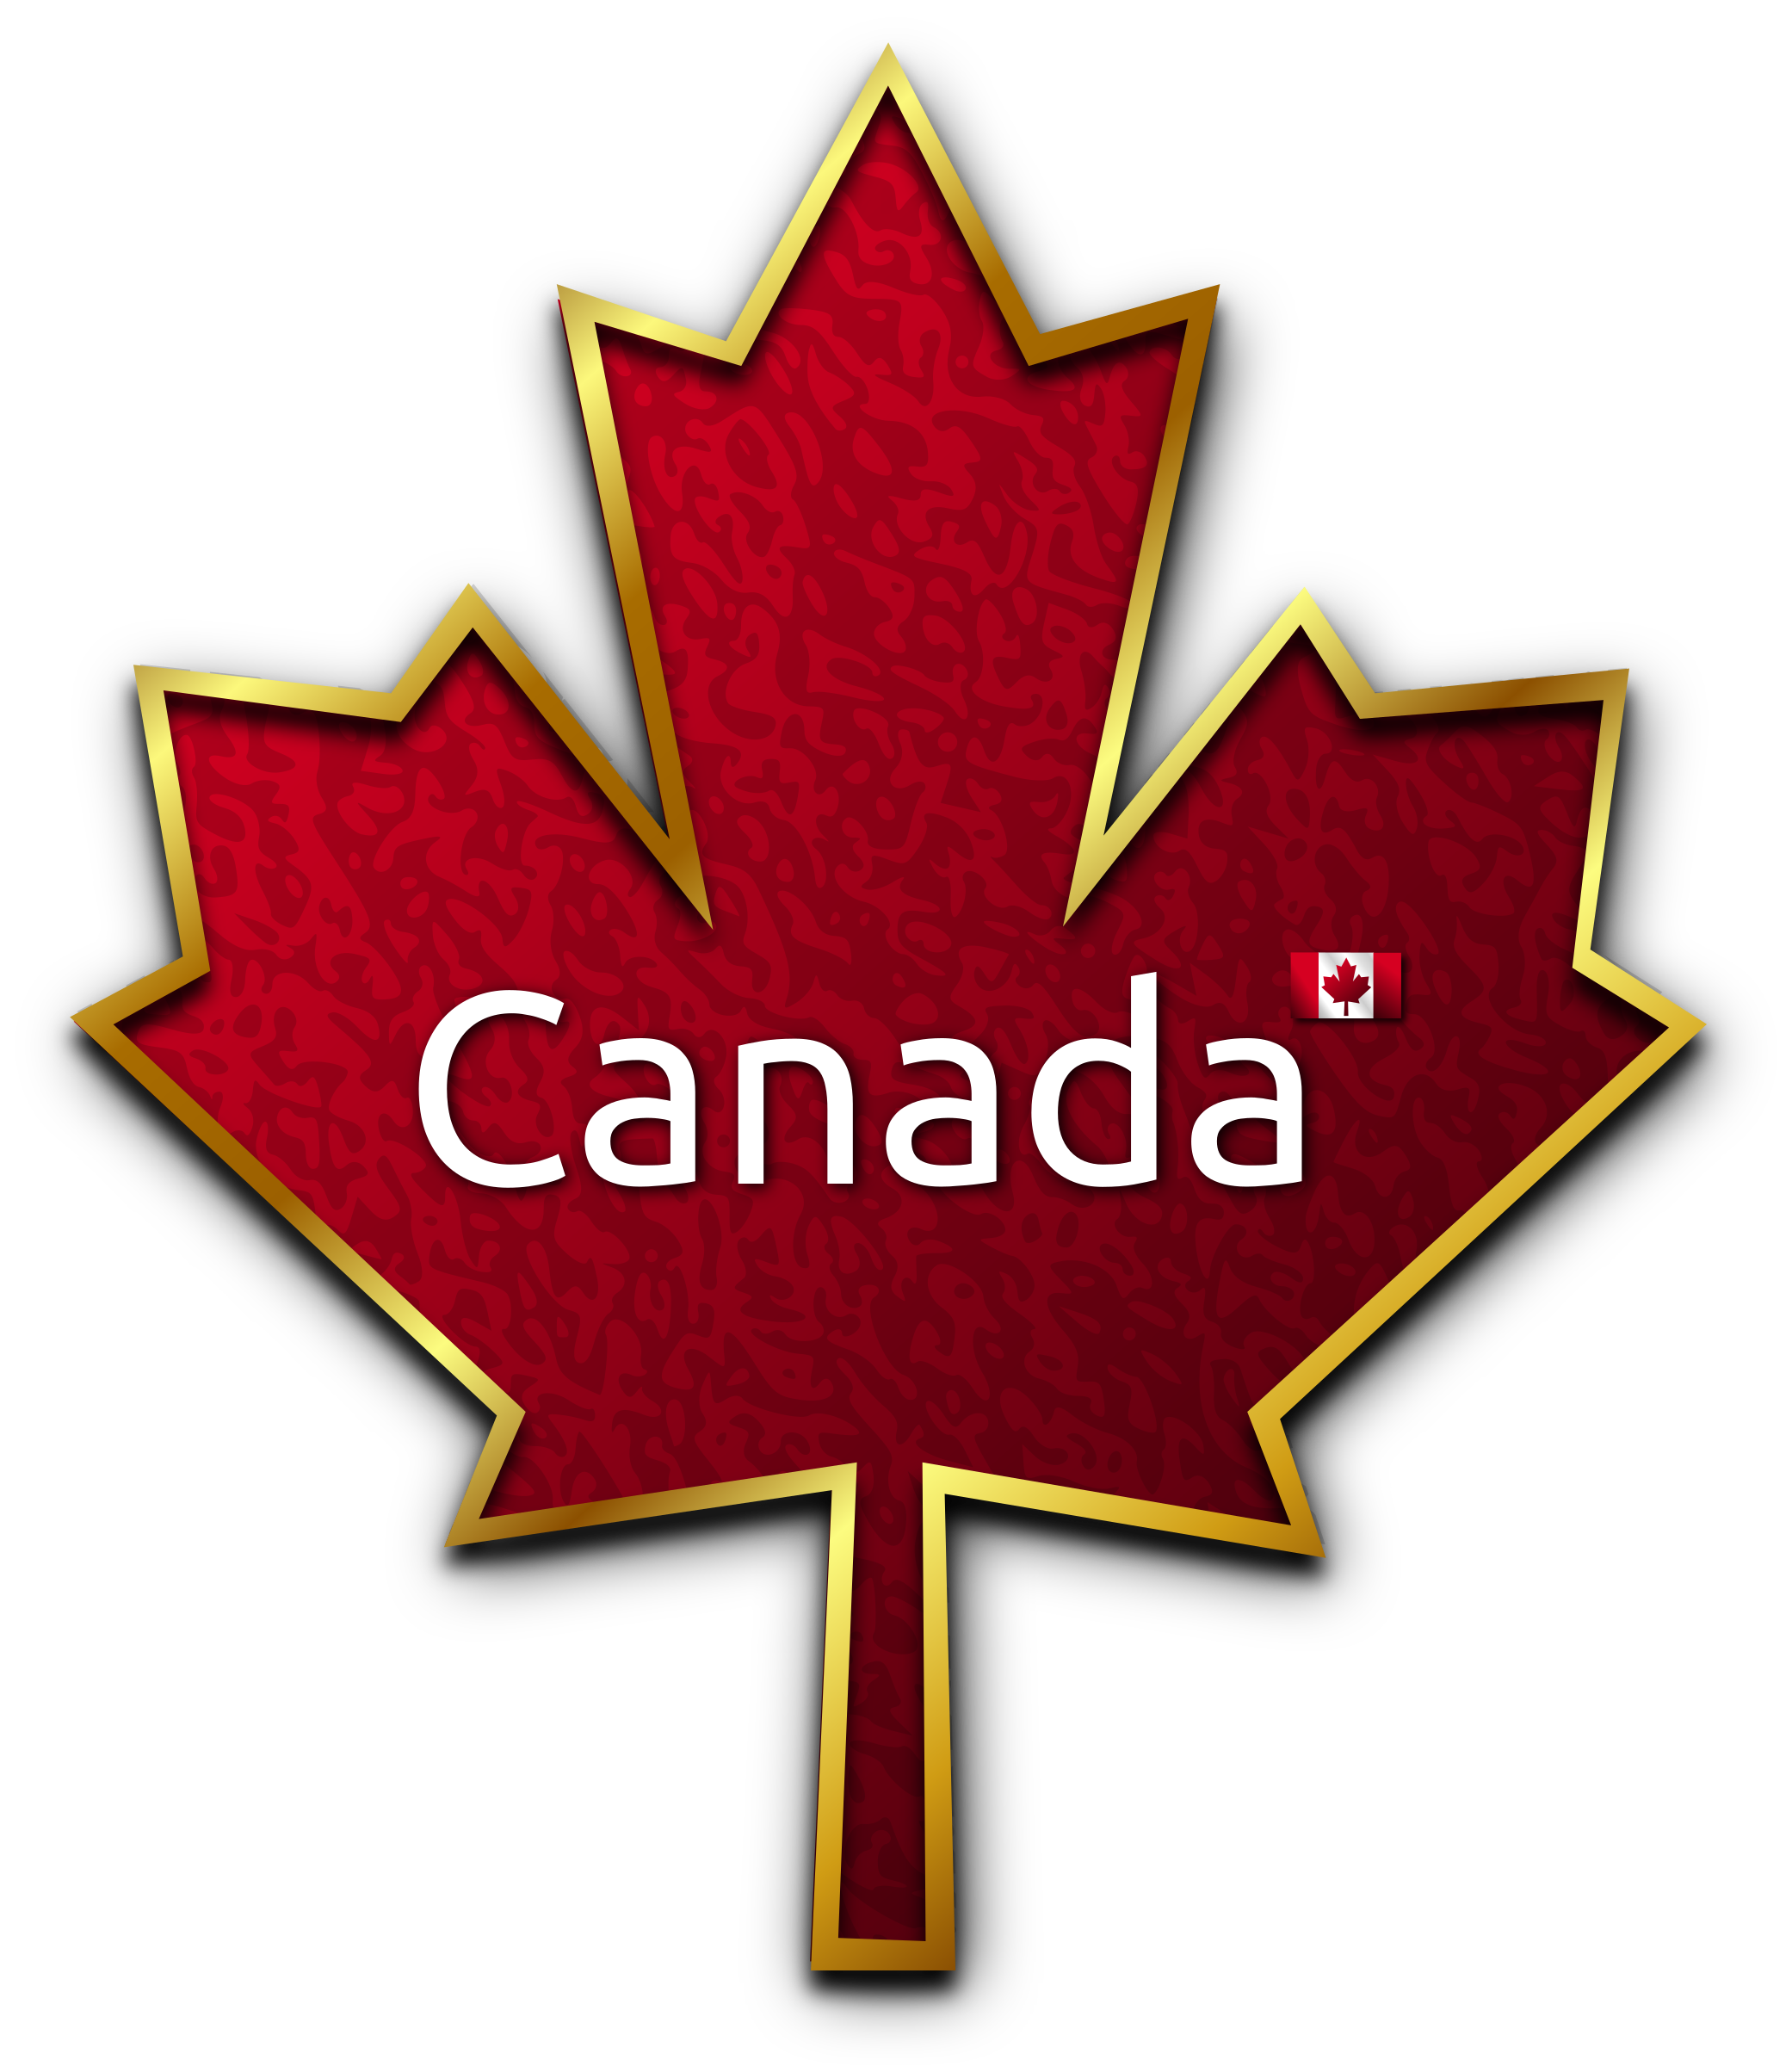 Canadian citizenship Act